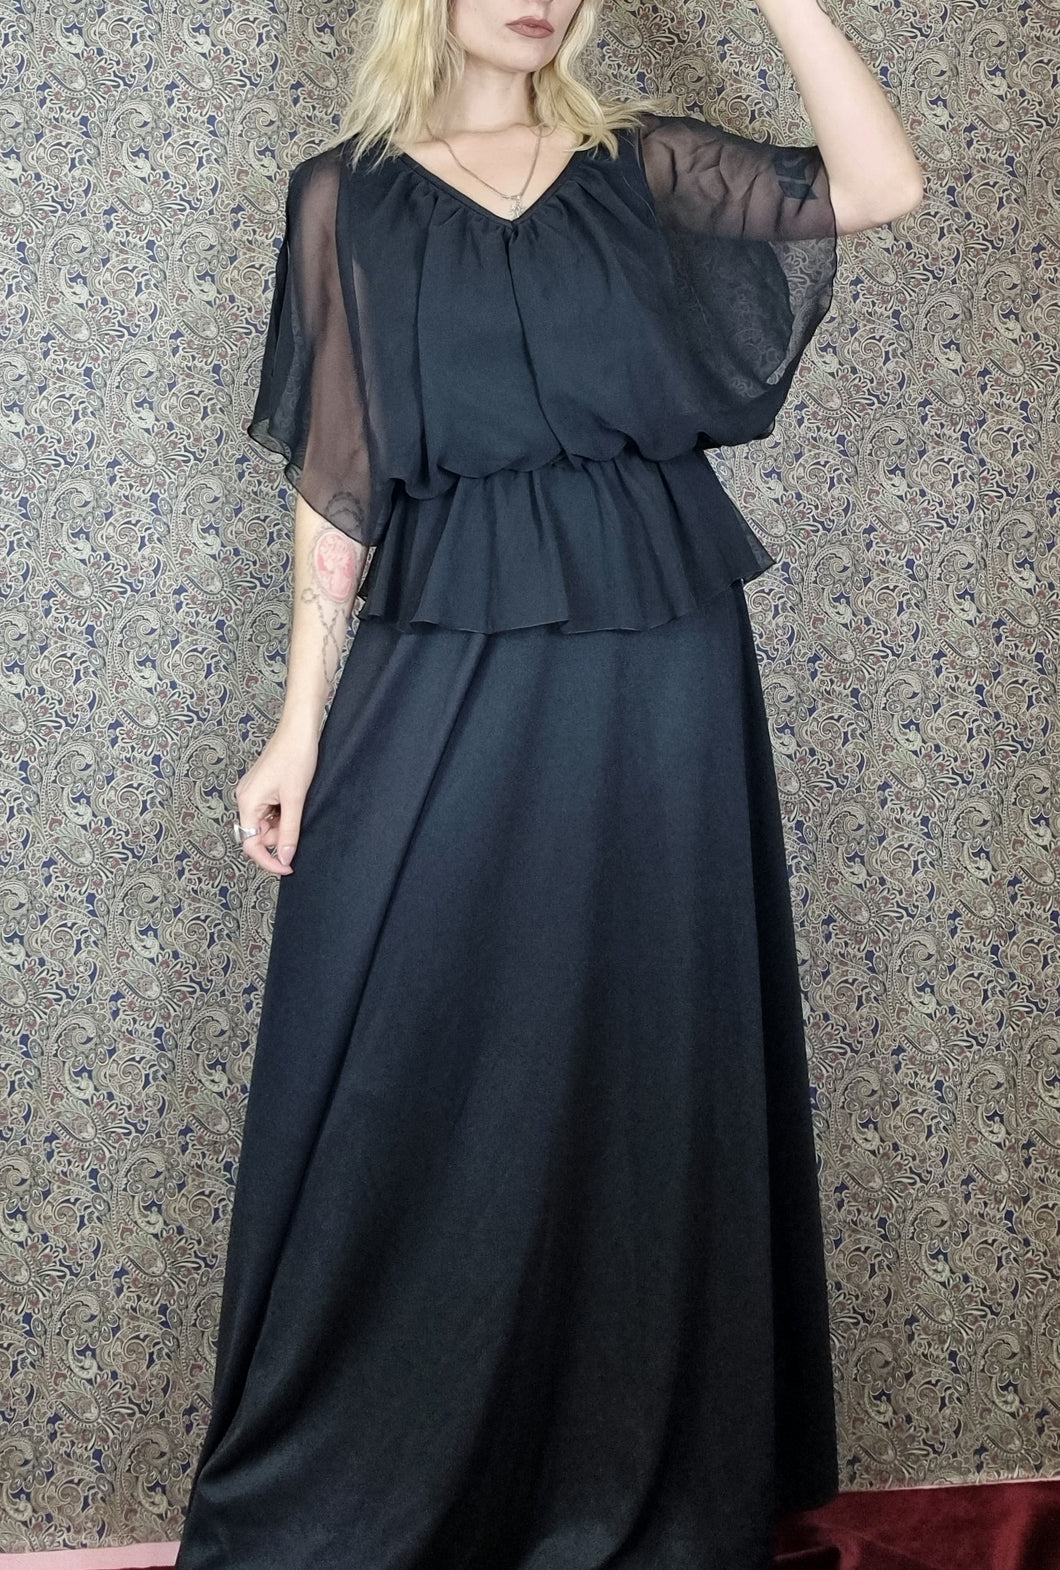 70s Classy Black Maxi Dress